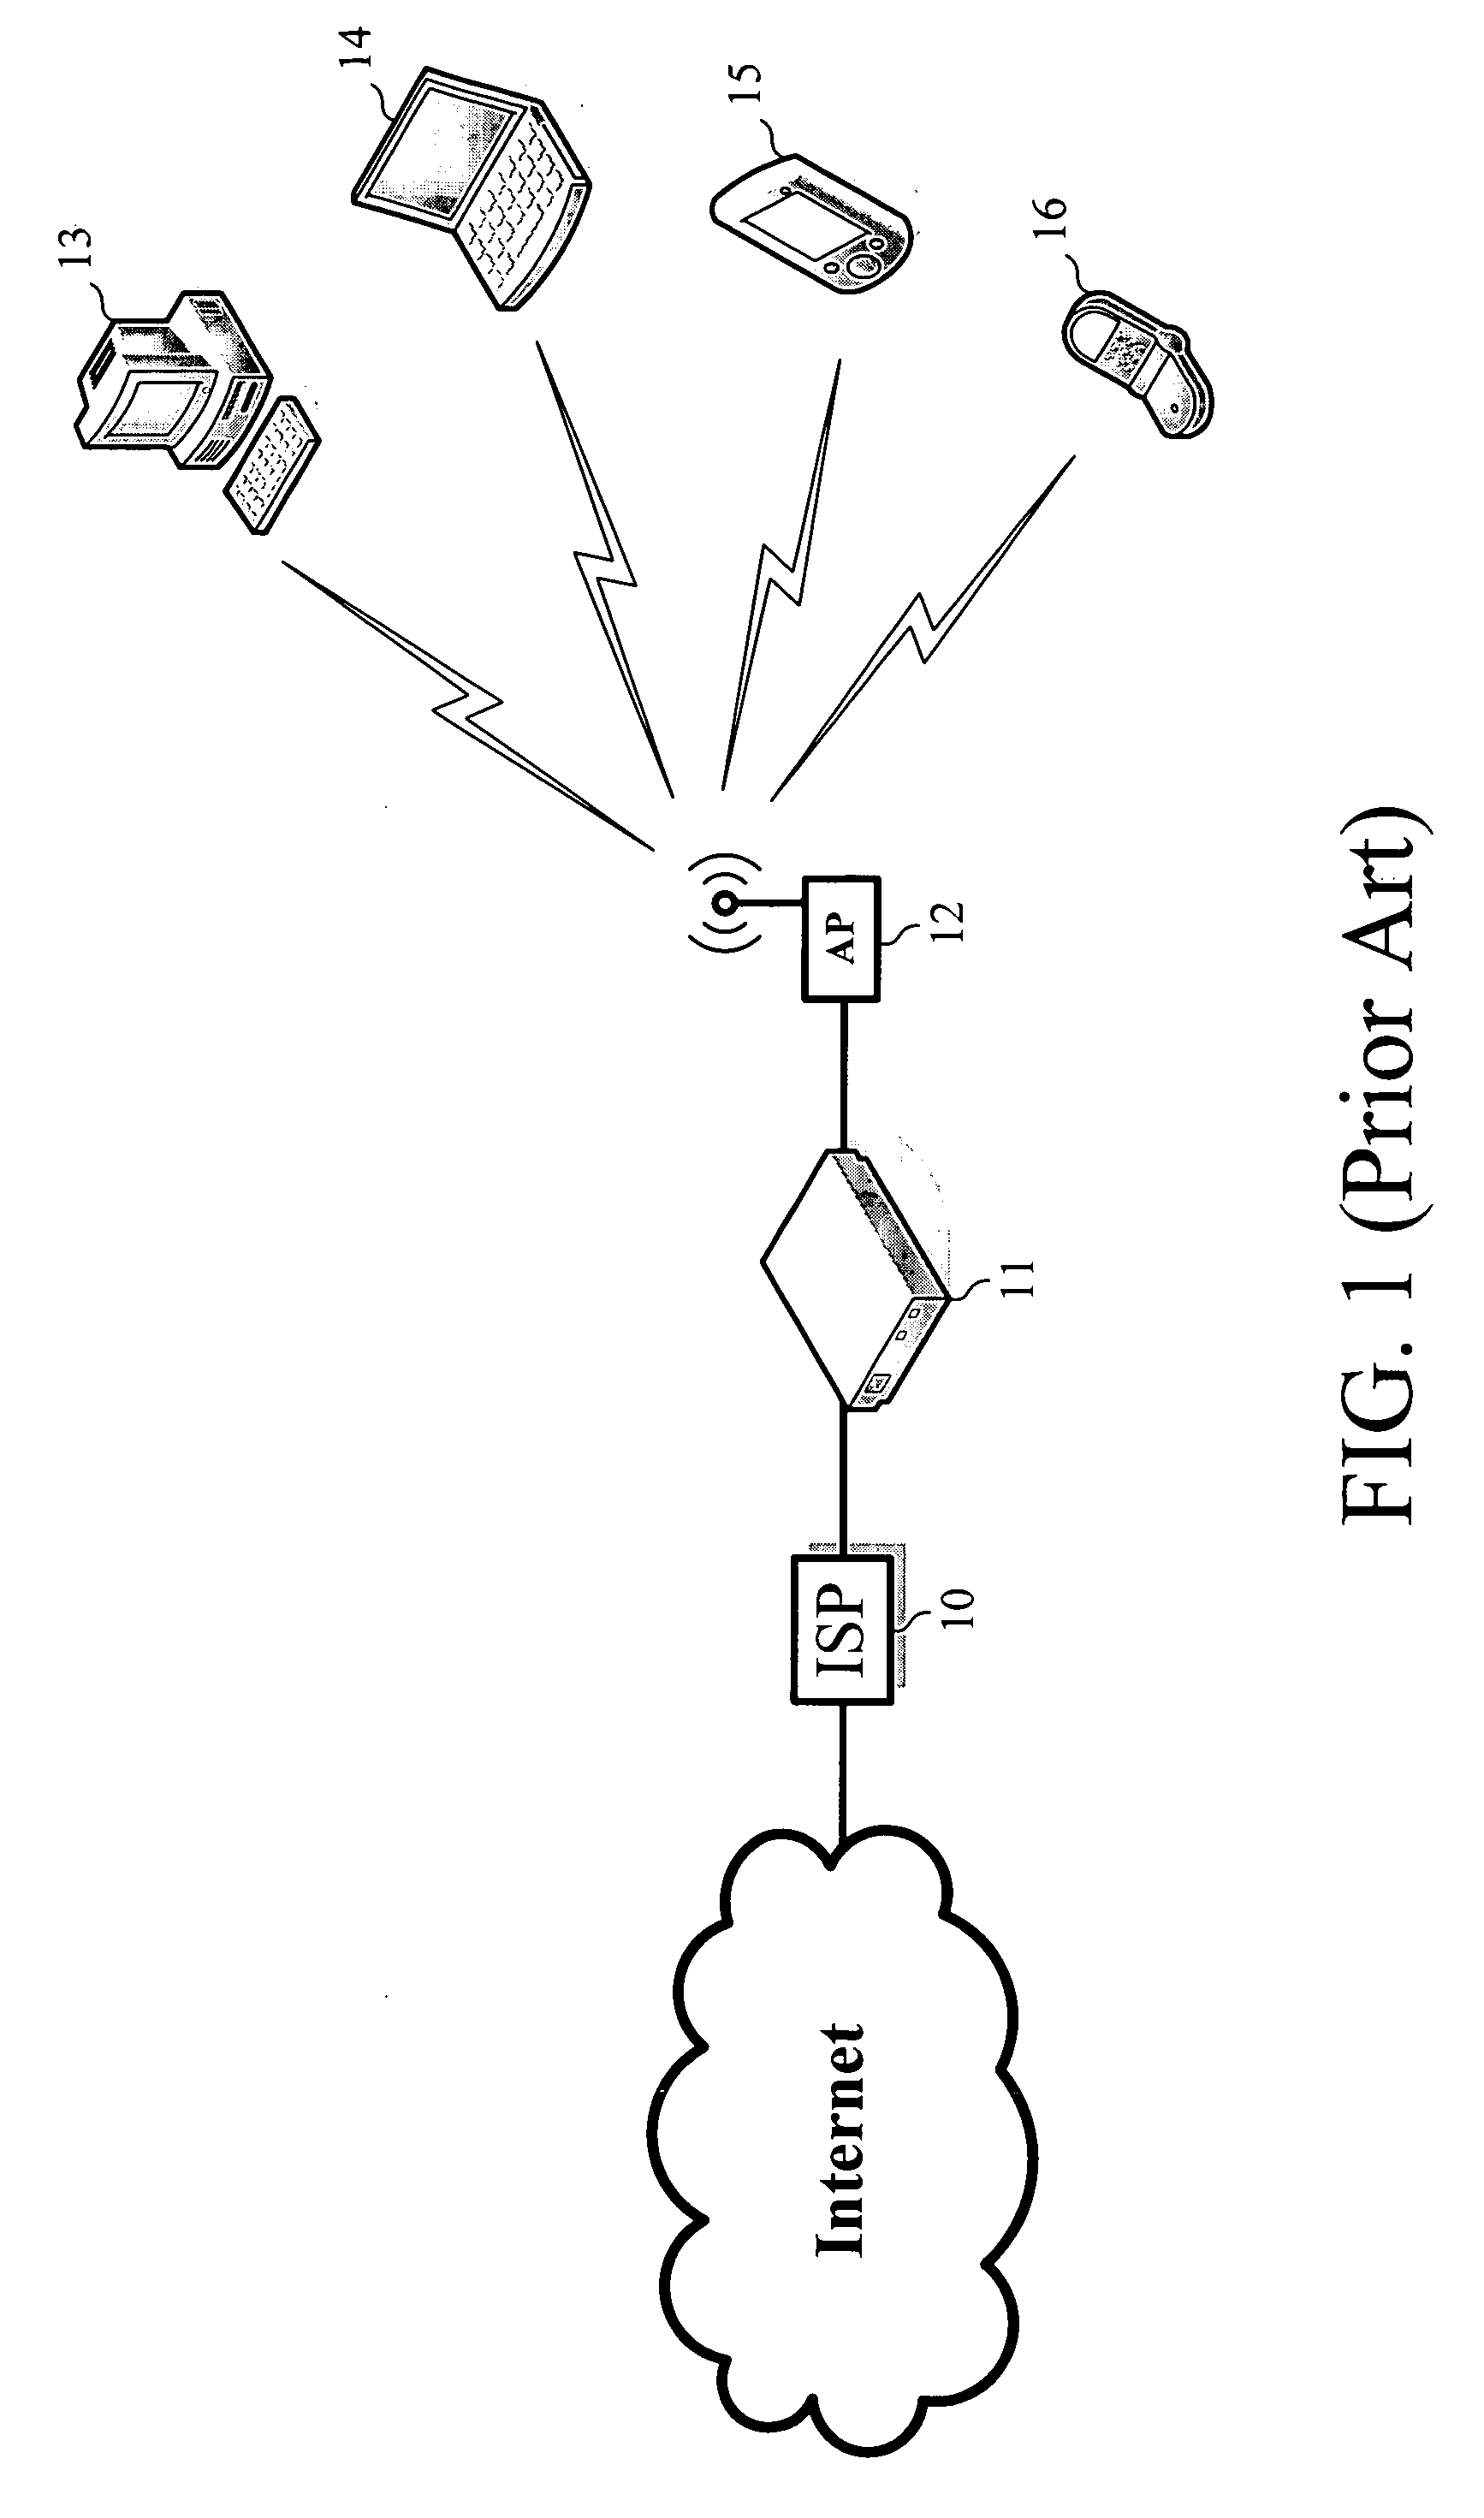 Dual-function transmitting system